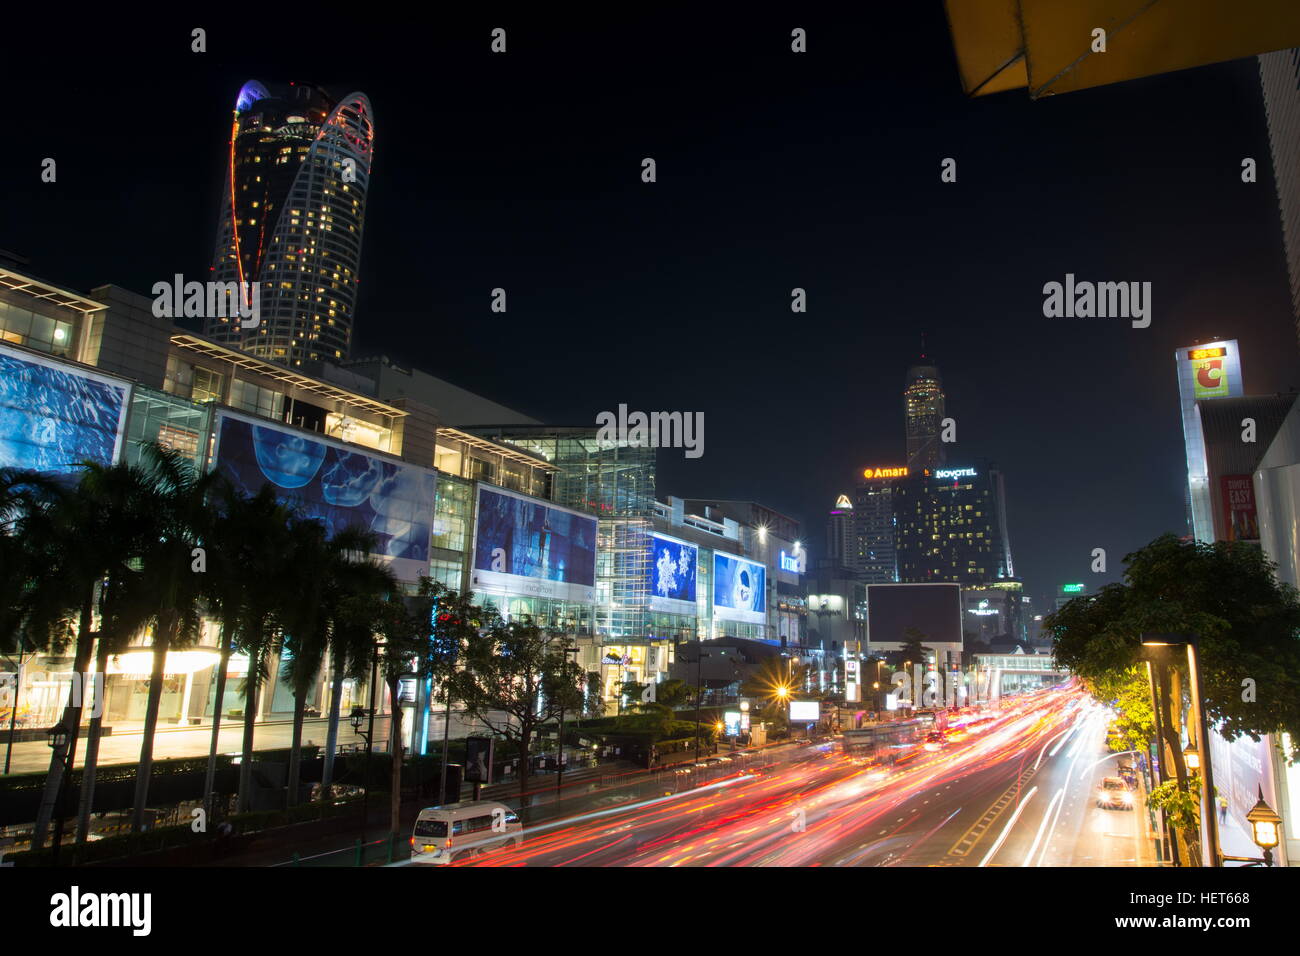 BANGKOK, THAILAND - 13. Oktober 2016: Blick auf den Siam Square Nachtverkehr mit Lichtspuren. Dieser Platz ist berühmte Einkaufsviertel in Bangkok Stockfoto